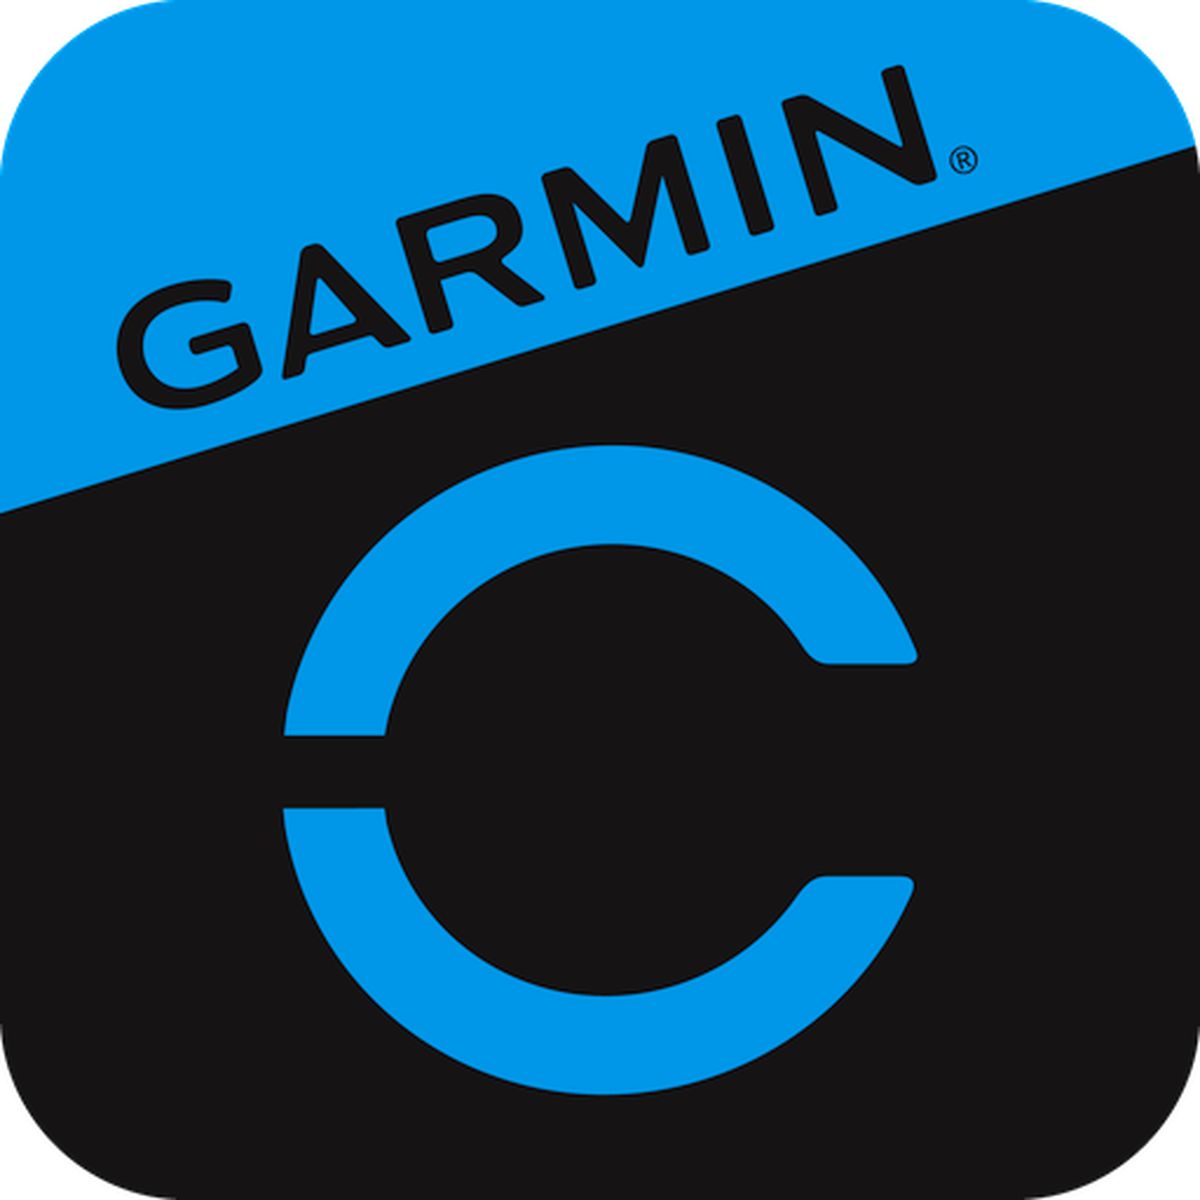 به کمک موبایل خود به تناسب اندام برسید/ Garmin Connect